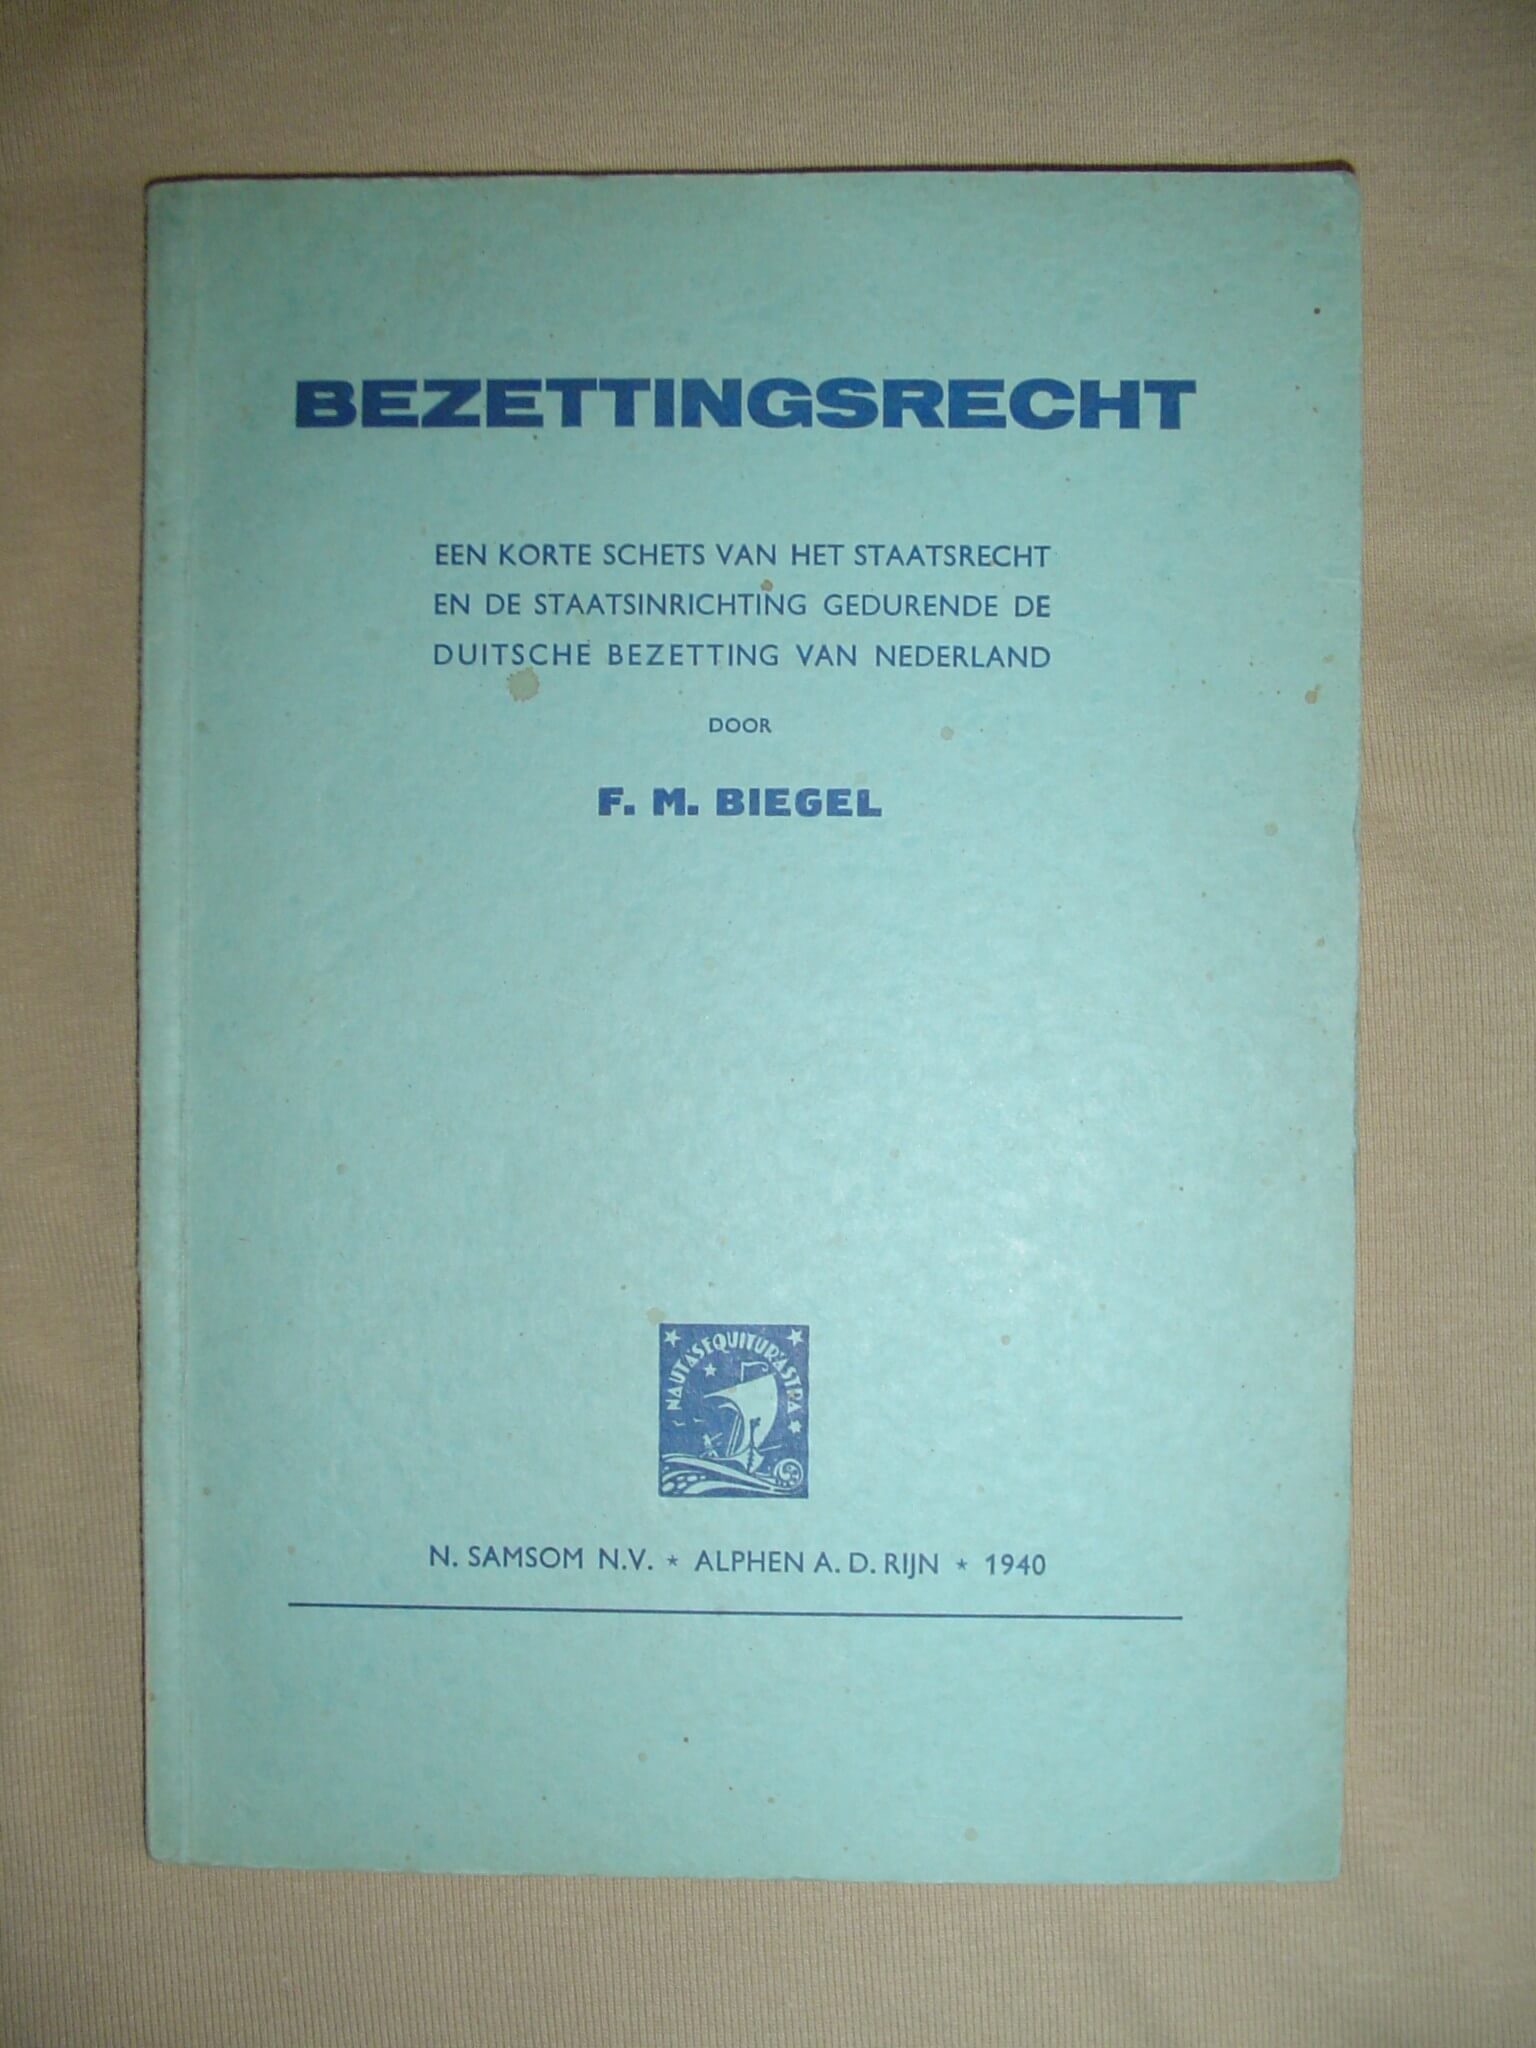 Boekje Bezettingsrecht uit de tweede wereldoorlog blauw